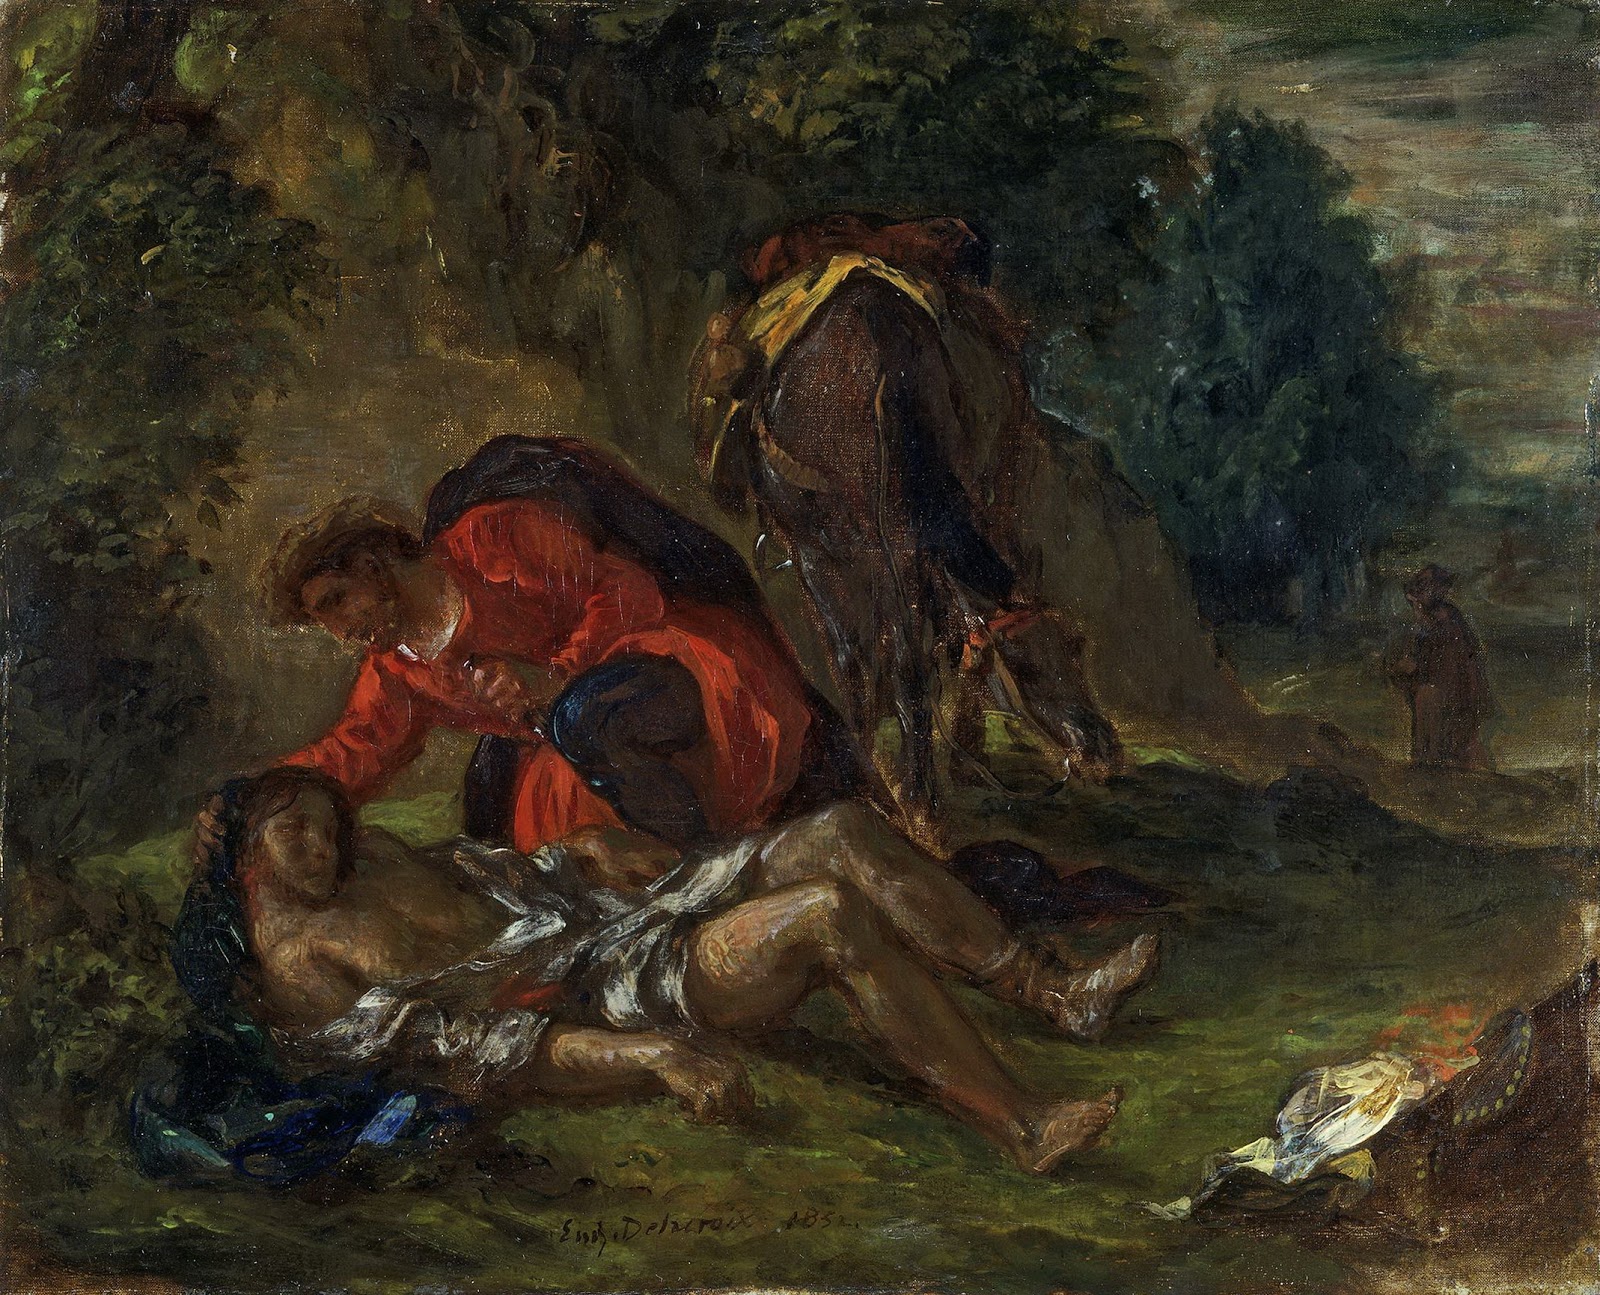 Eugene+Delacroix-1798-1863 (224).jpg